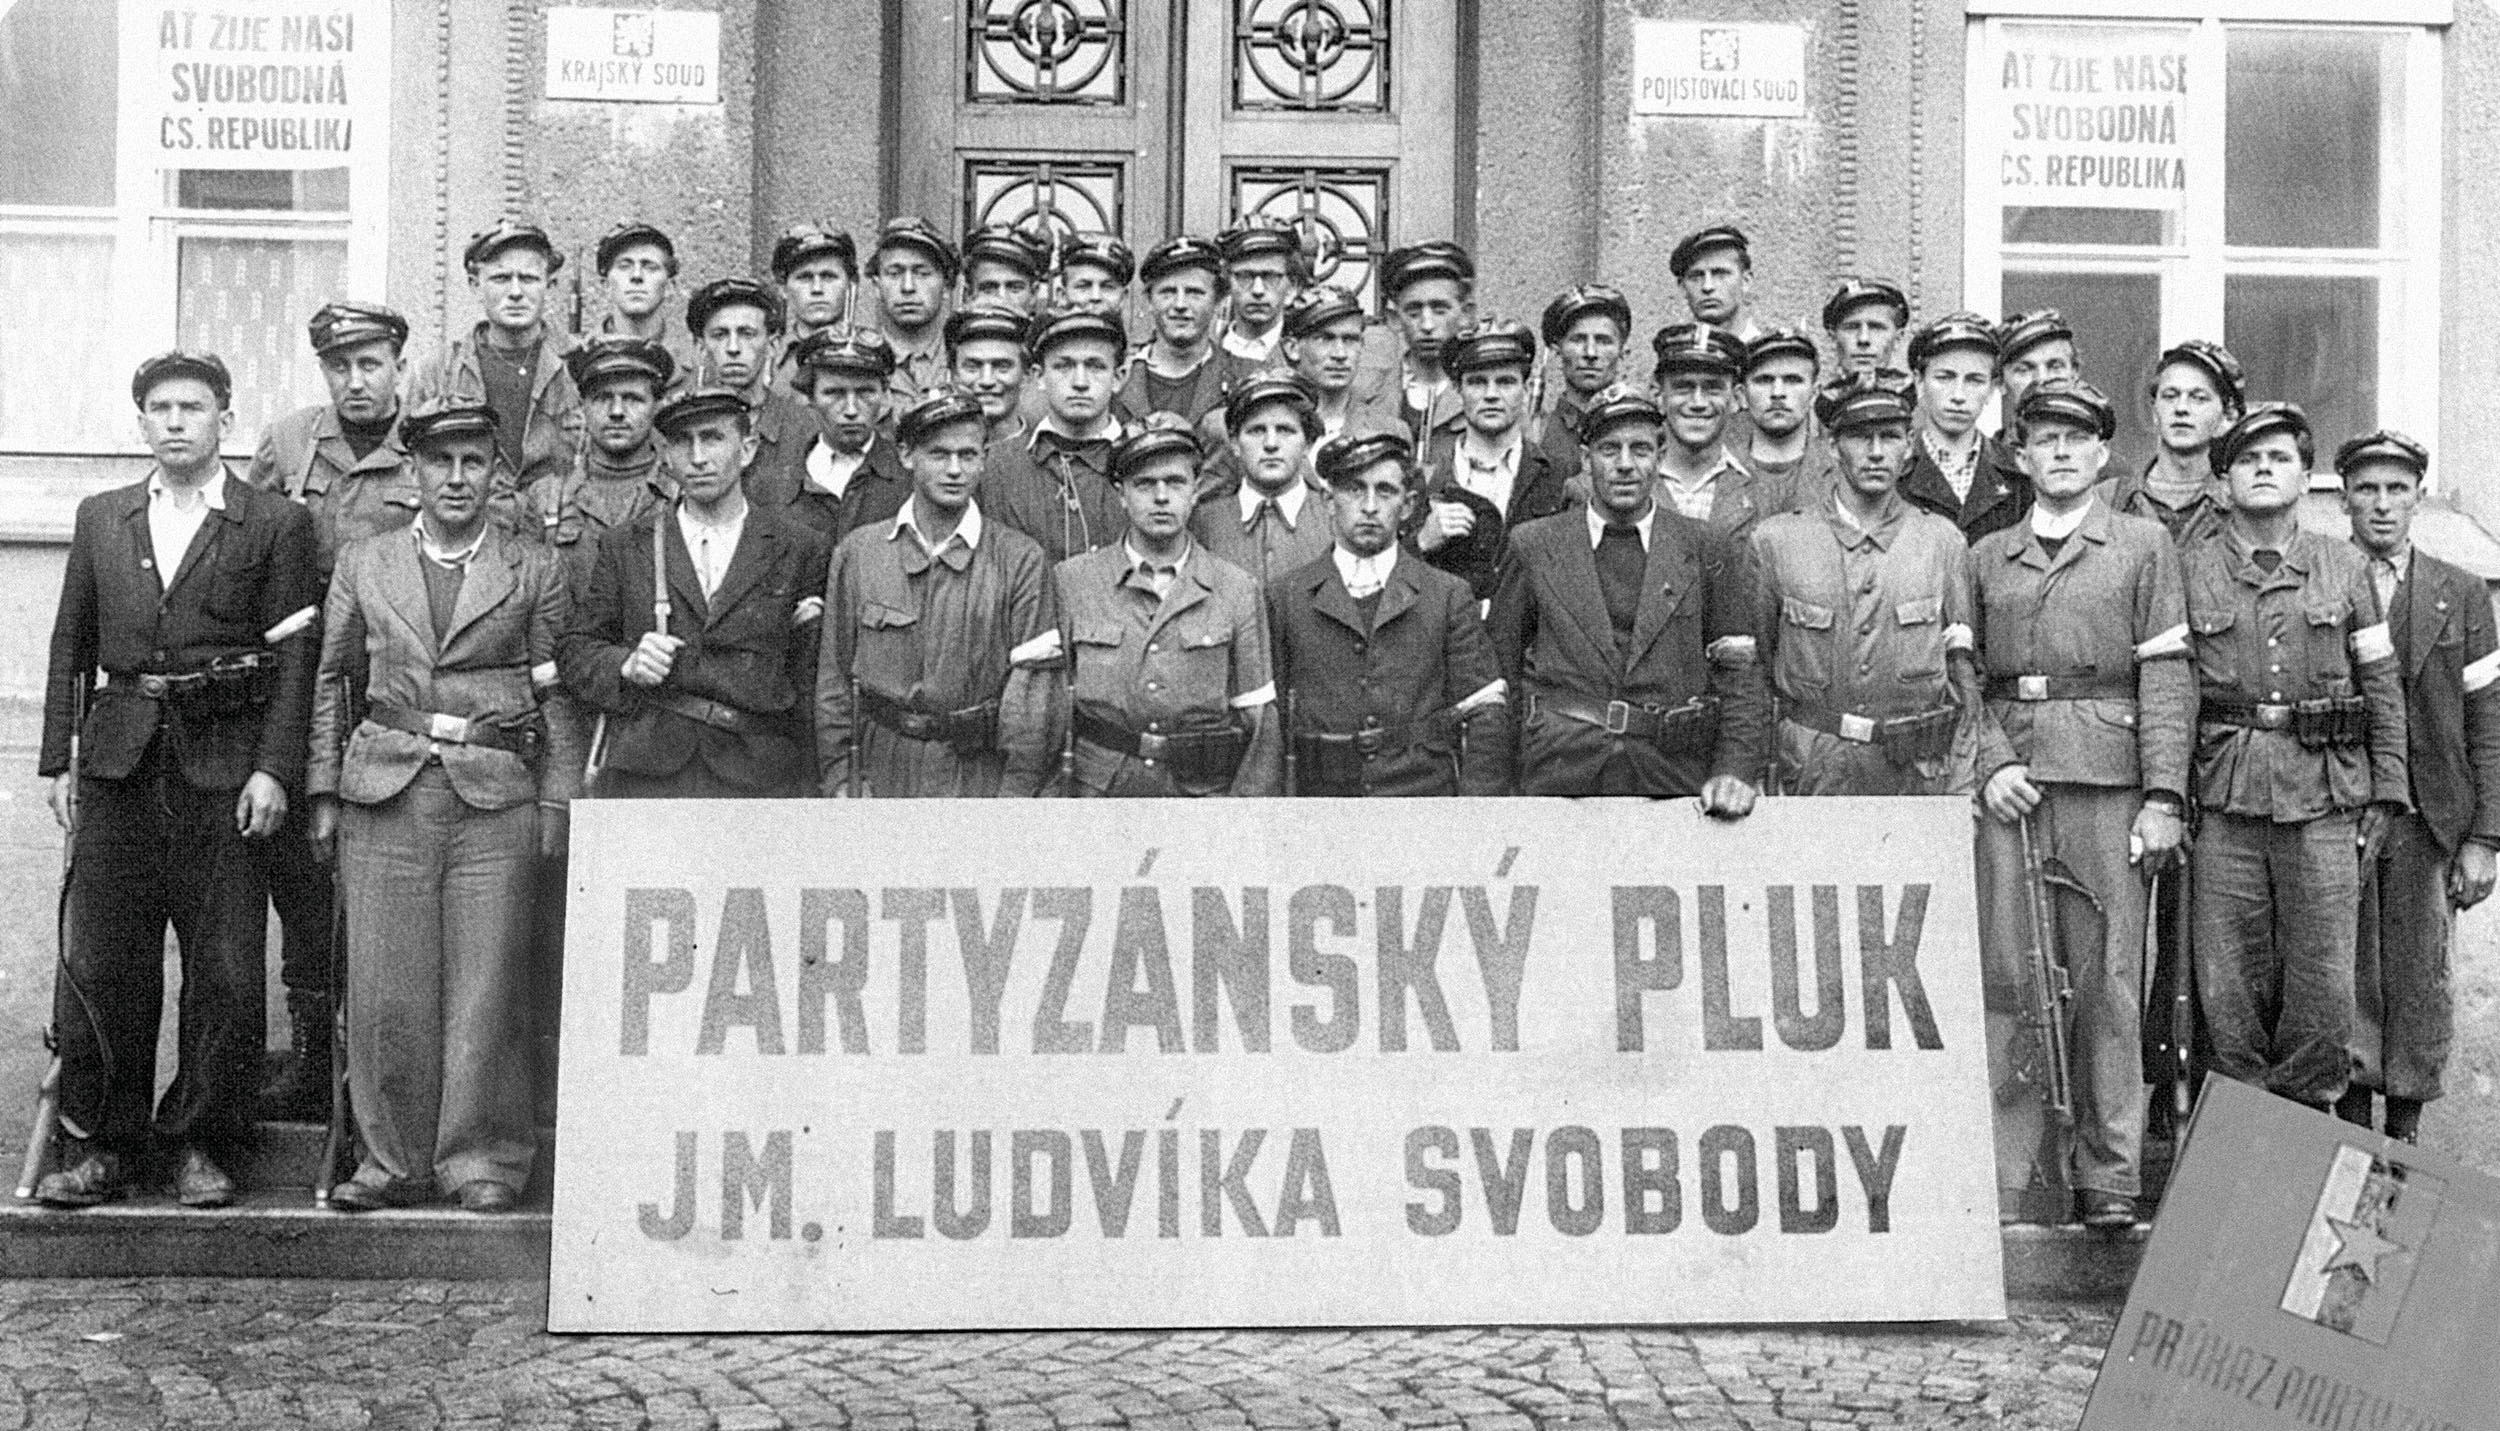 Na fotografii vlevo je čtvrtý zprava (s puškou v ruce) zachycen jednatřicetiletý desátník Jaroslav Pudil, který partyzánům velel.